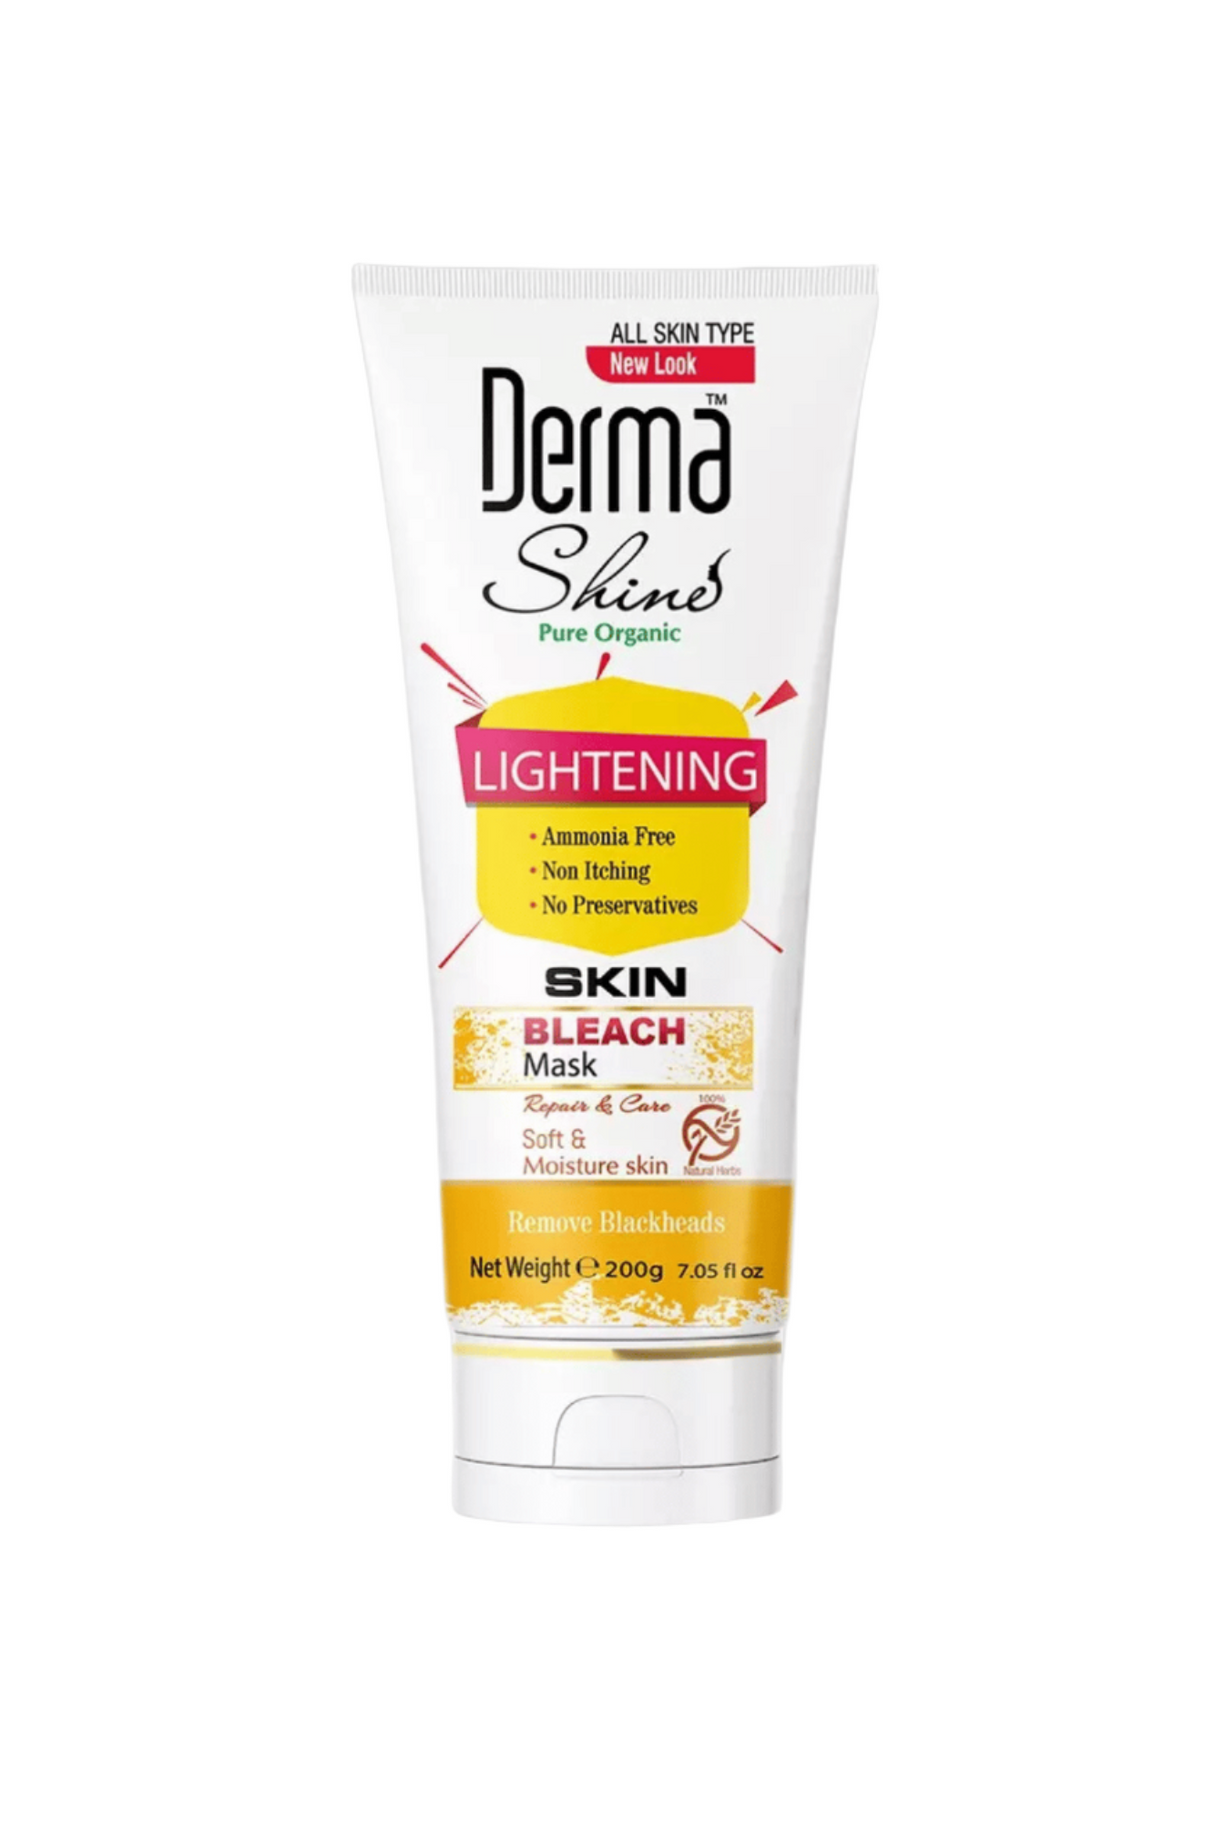 derma shine lightening bleach mask 200g